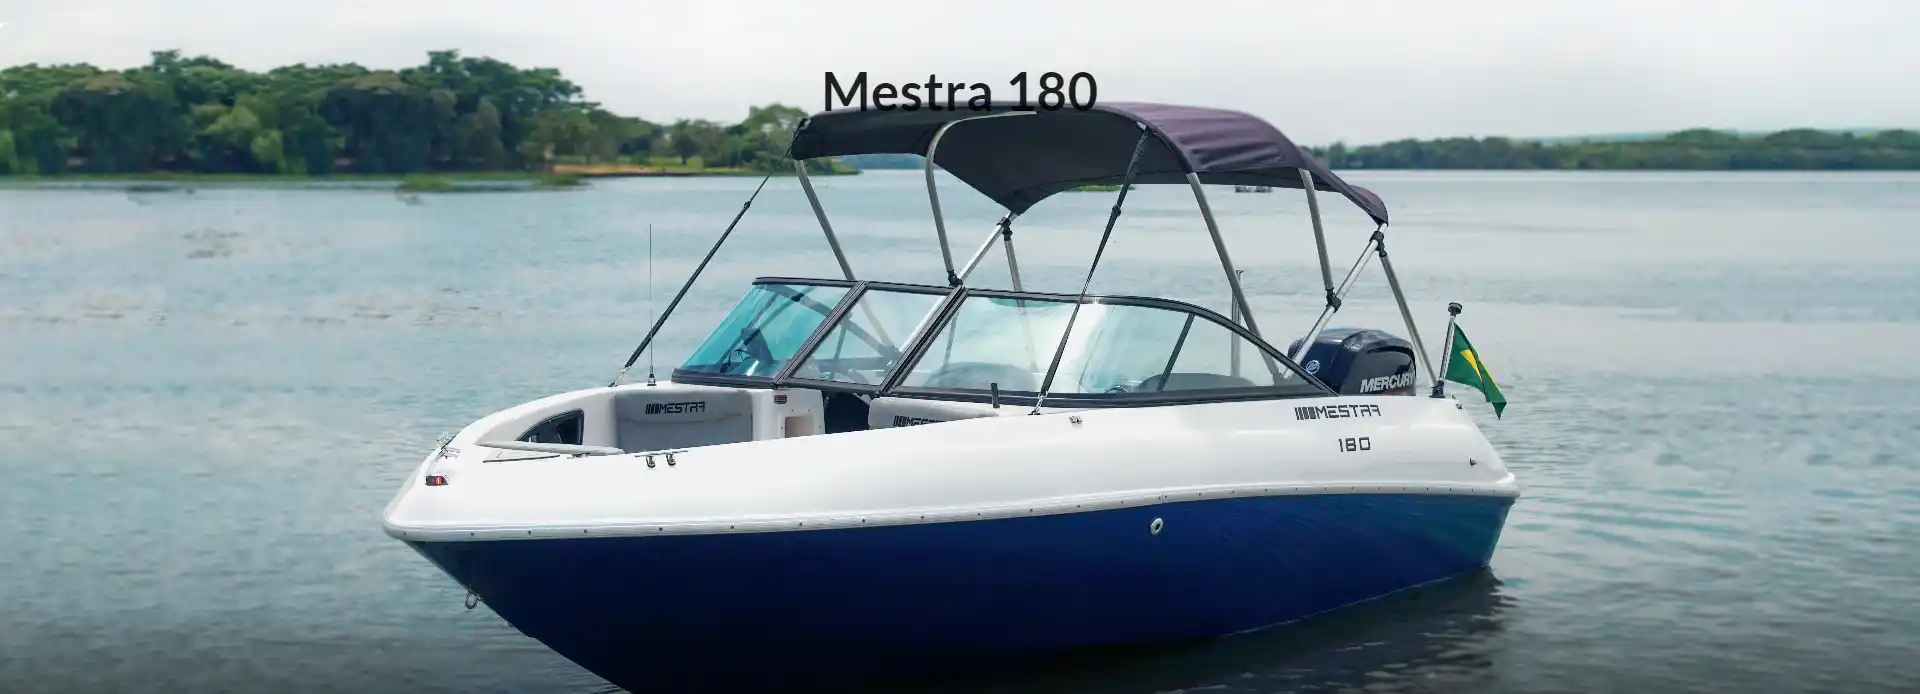 Mestra Boats M180 photo